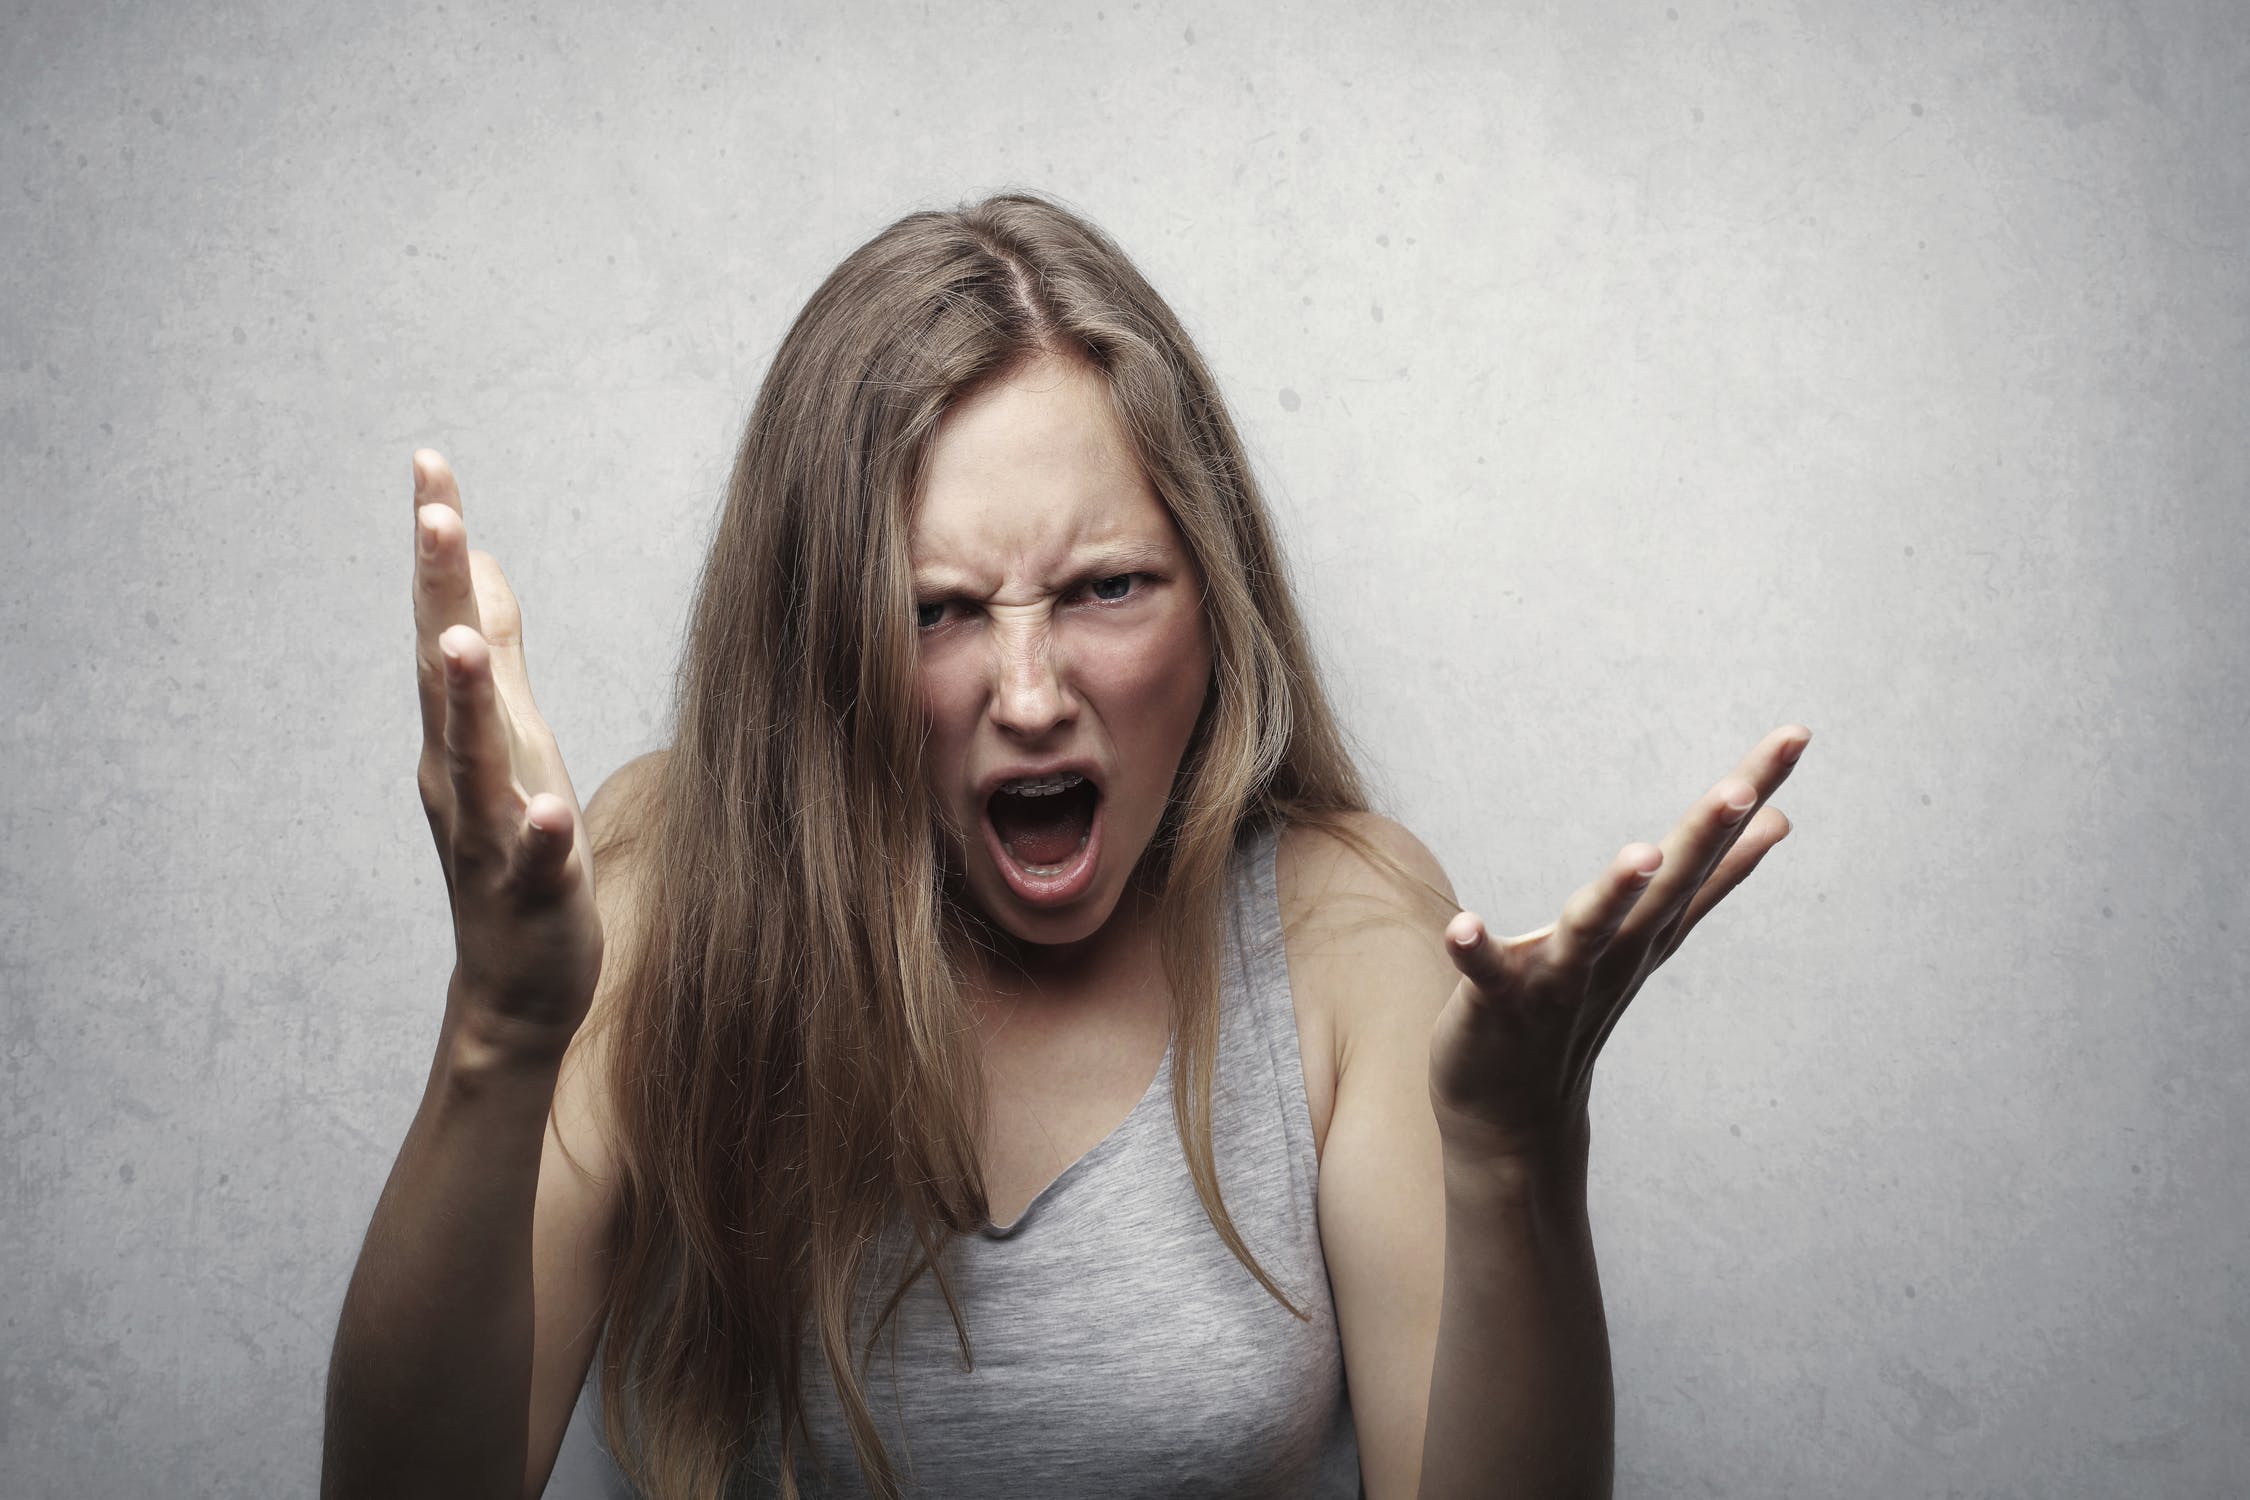 A woman having a temper tantrum | Source: Pexels